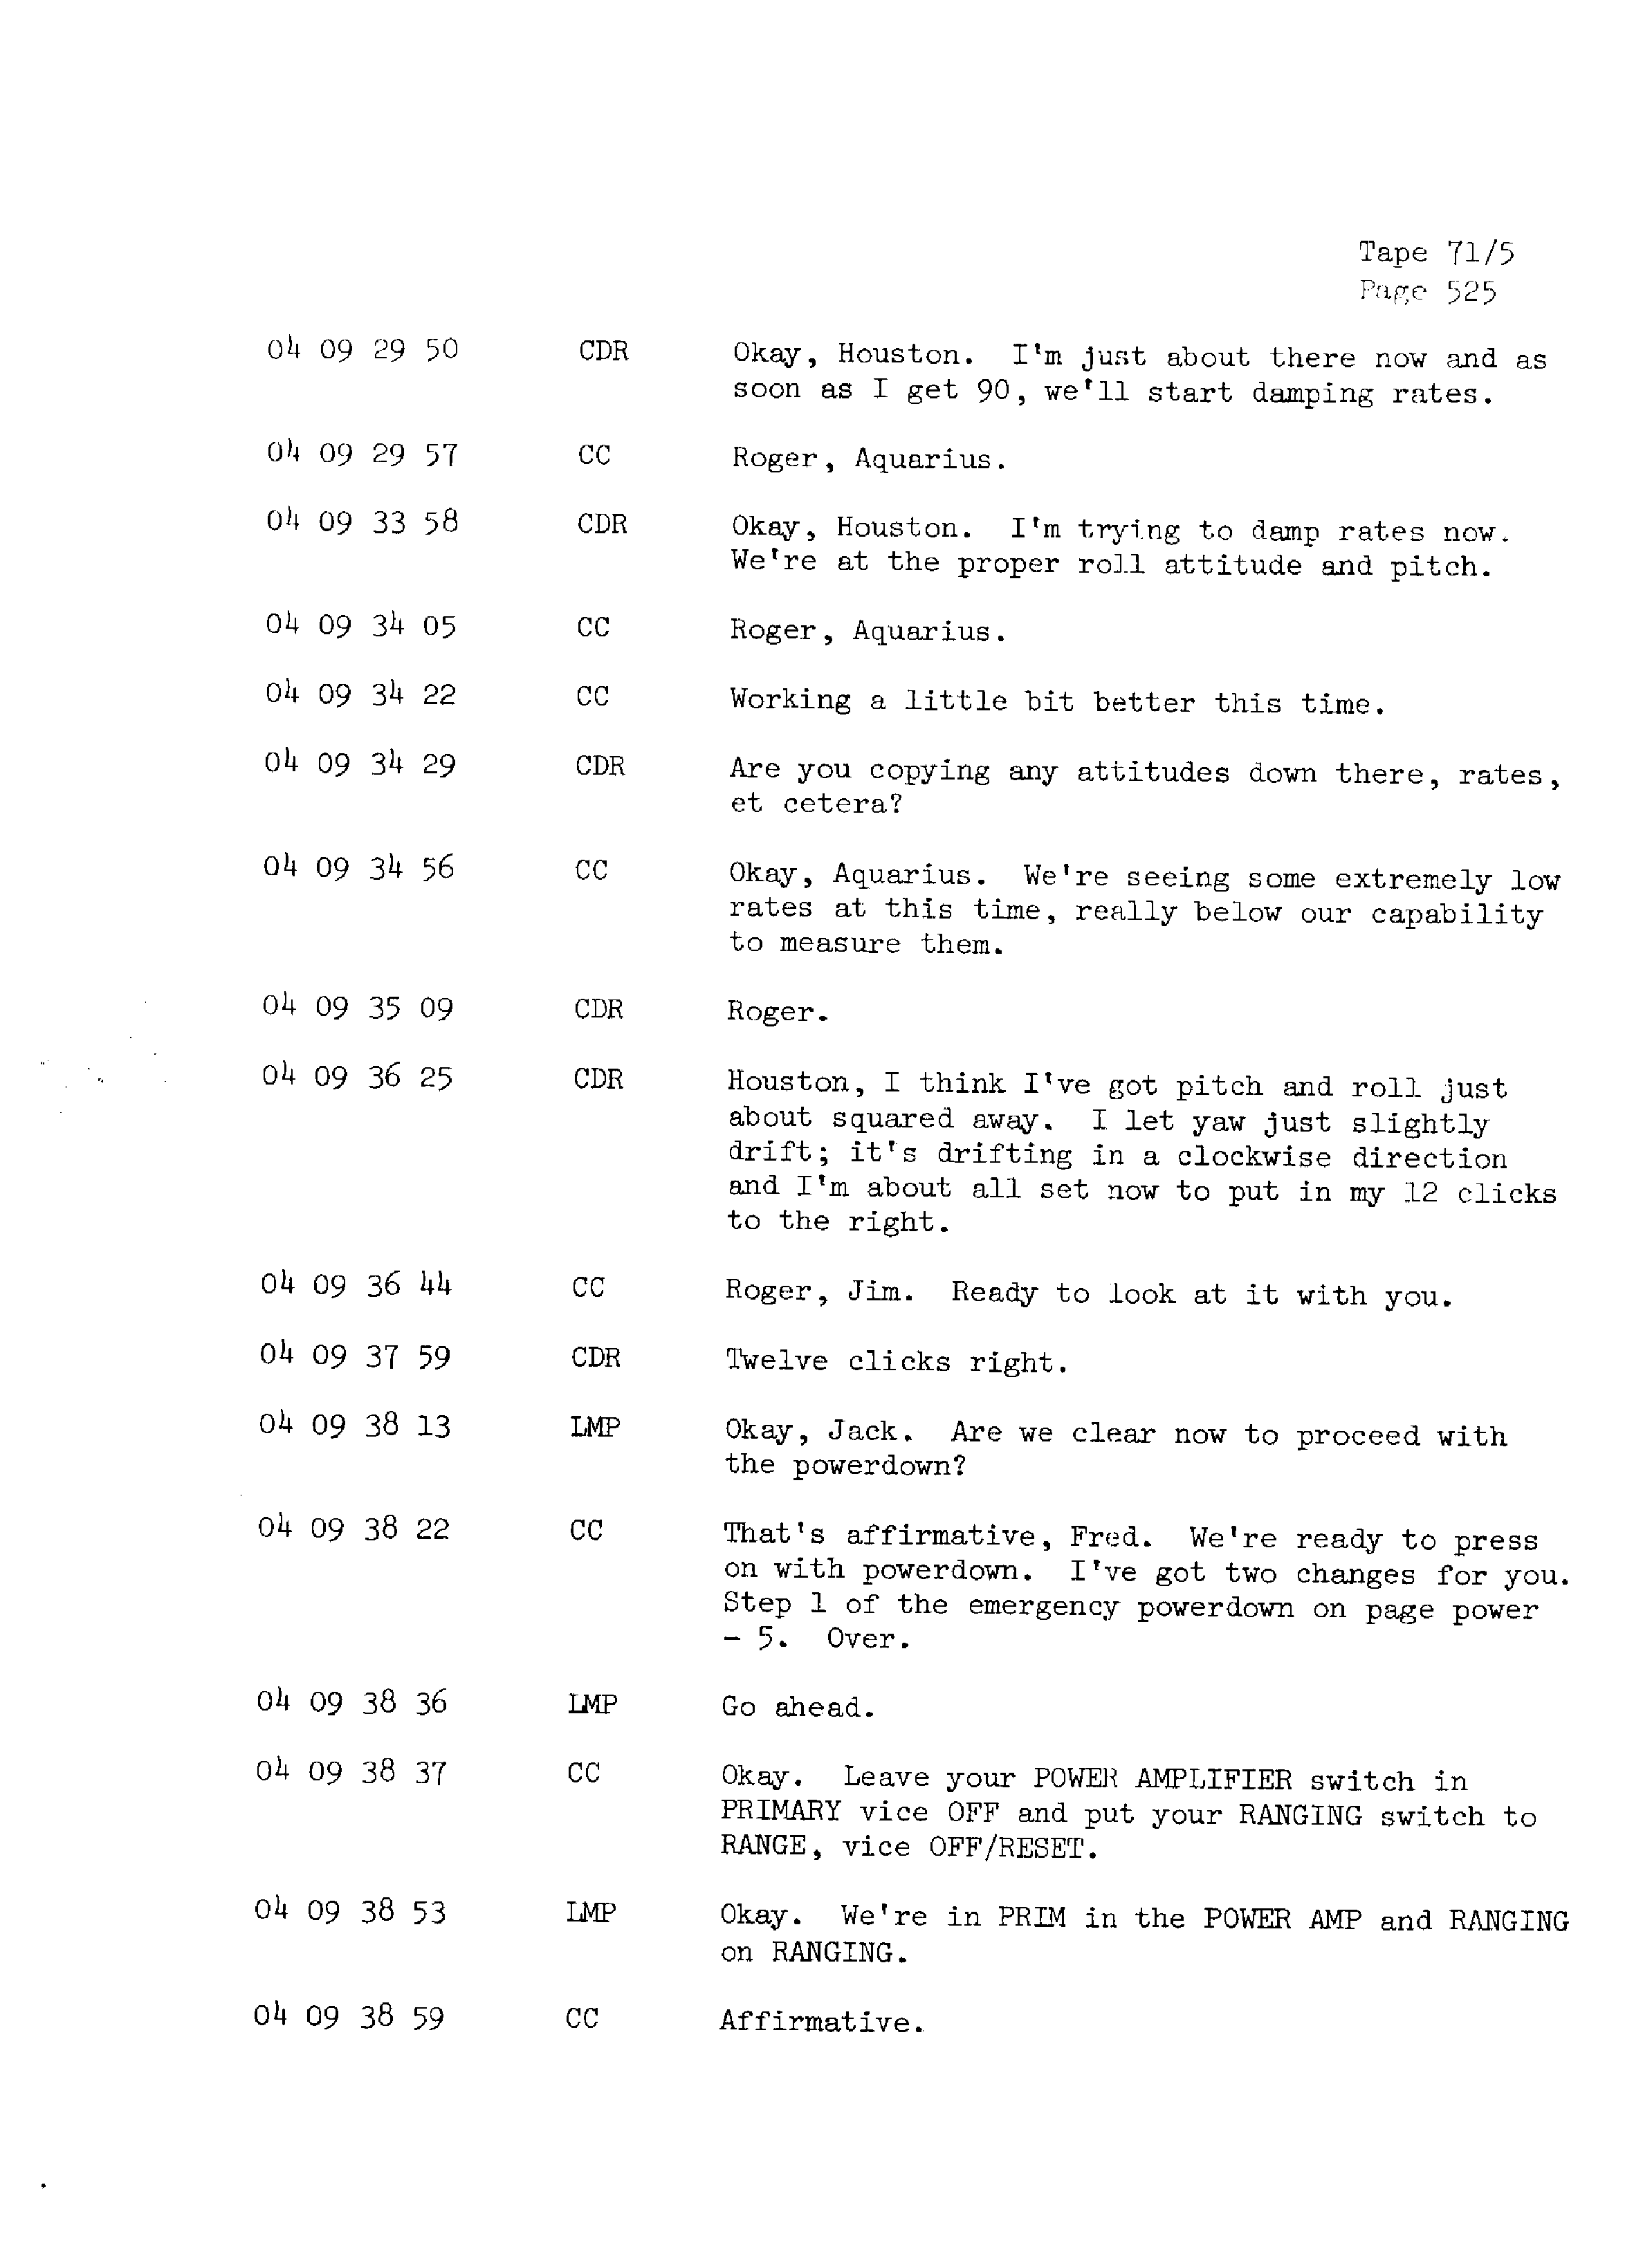 Page 532 of Apollo 13’s original transcript